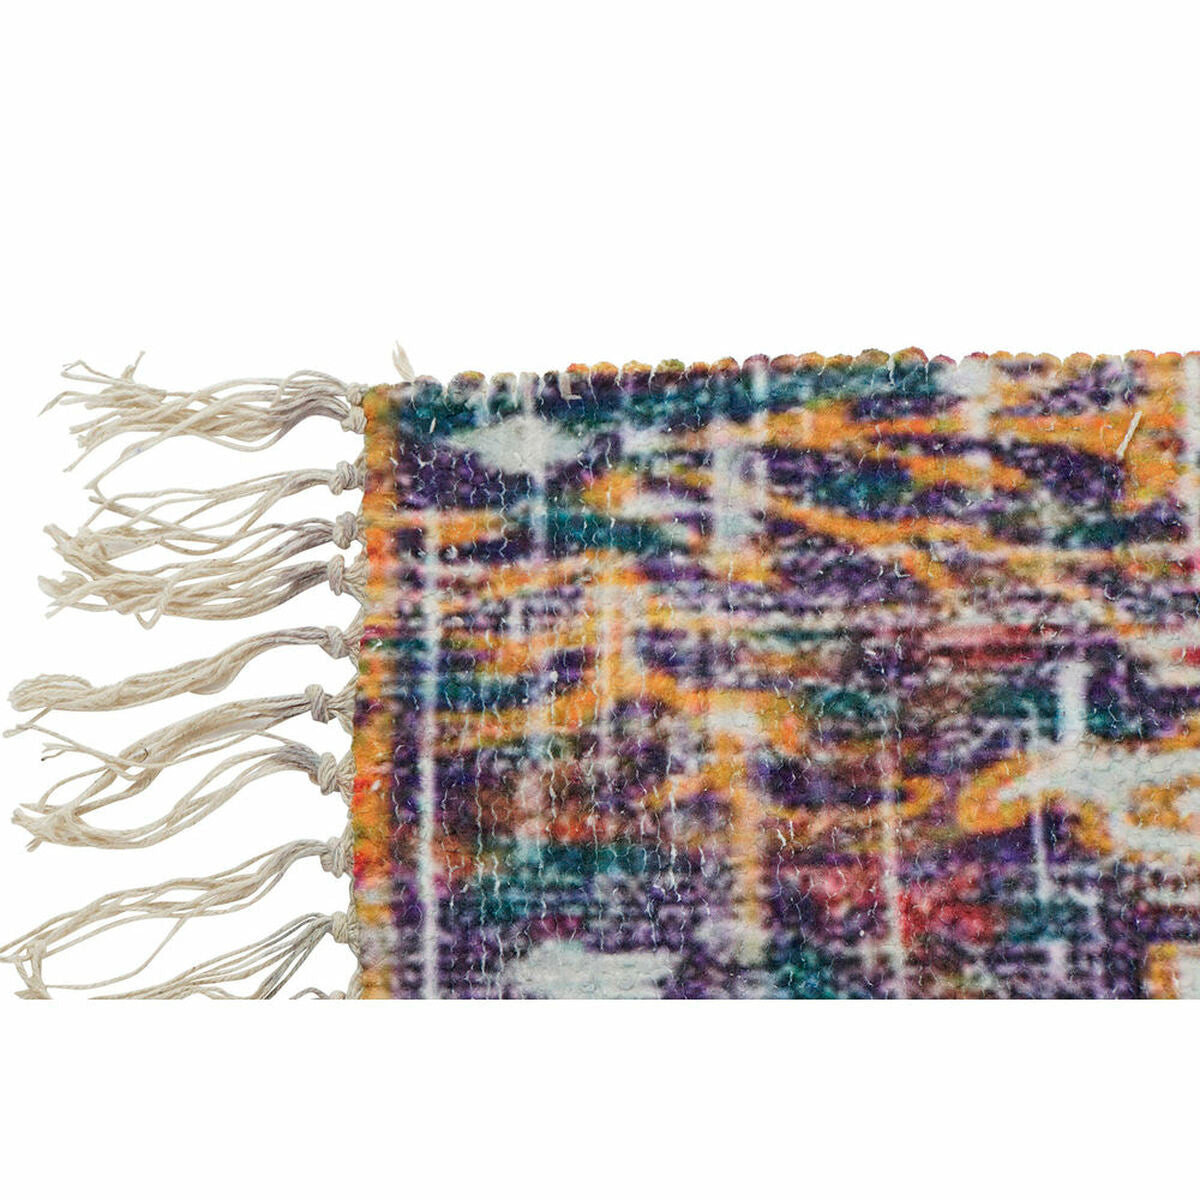 Teppich aus Baumwolle, bunt | 60 x 240 cm